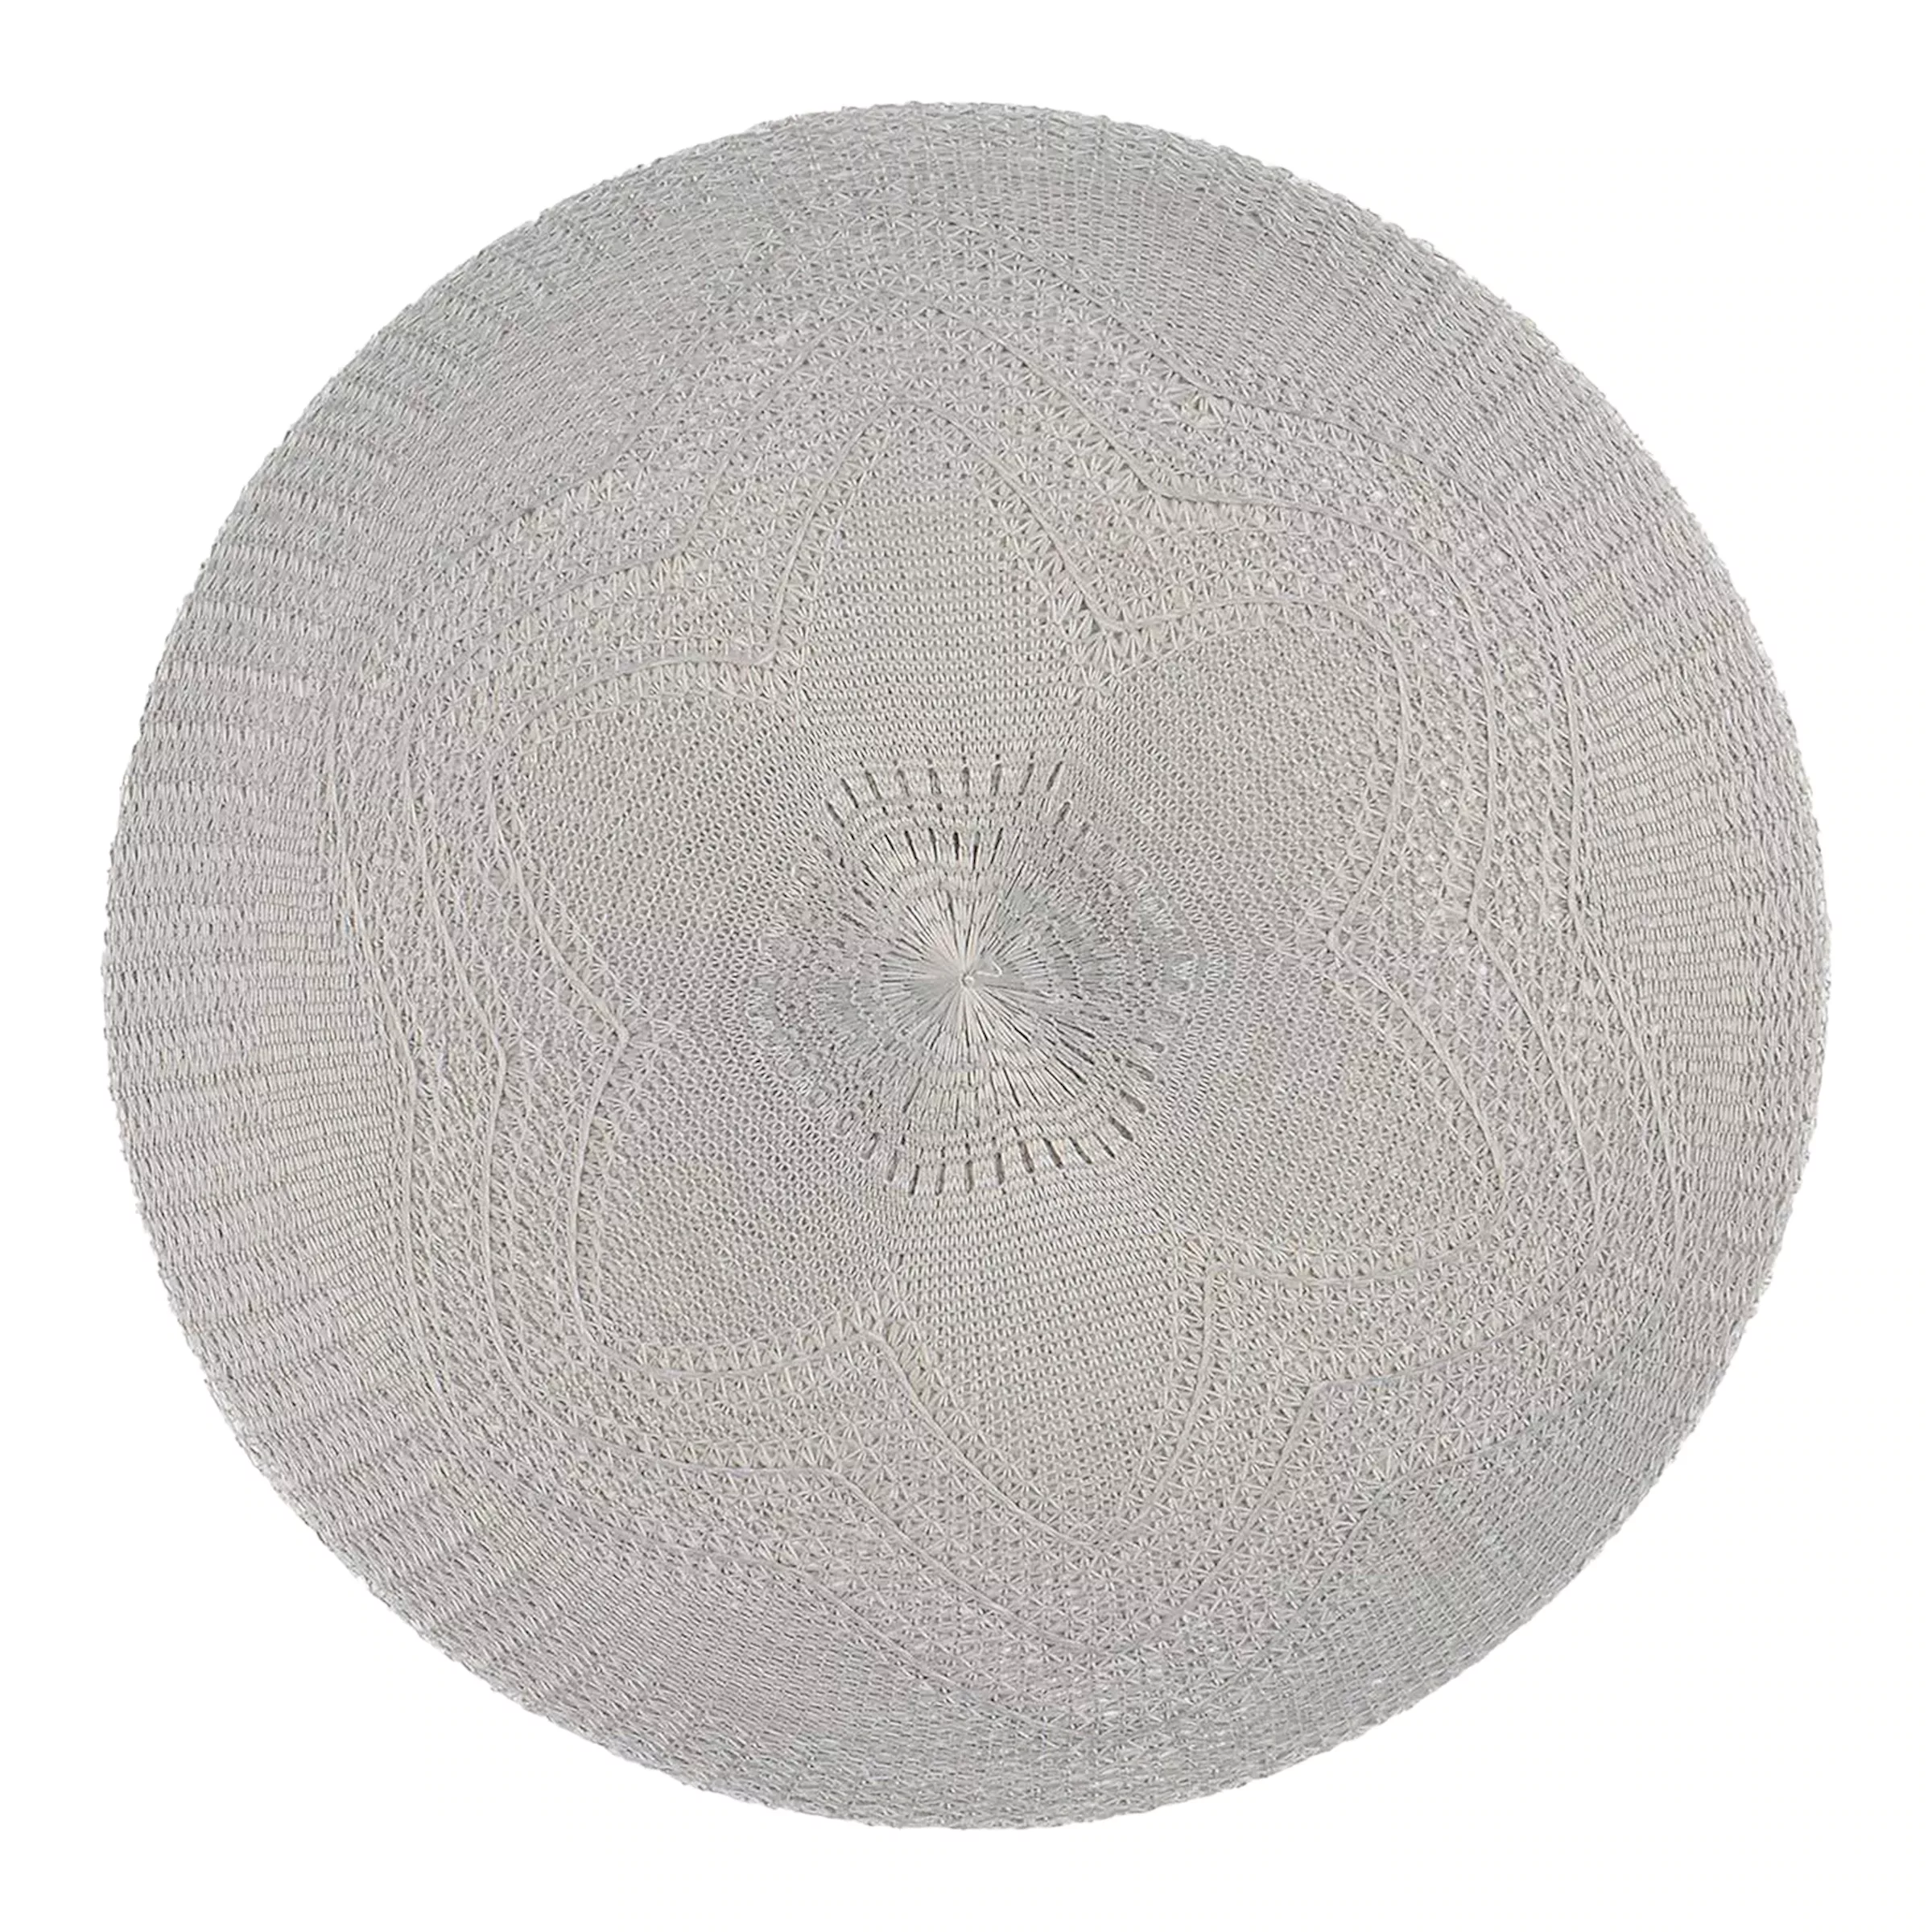 Tischset Lace, D:38cm, hellgrau günstig online kaufen